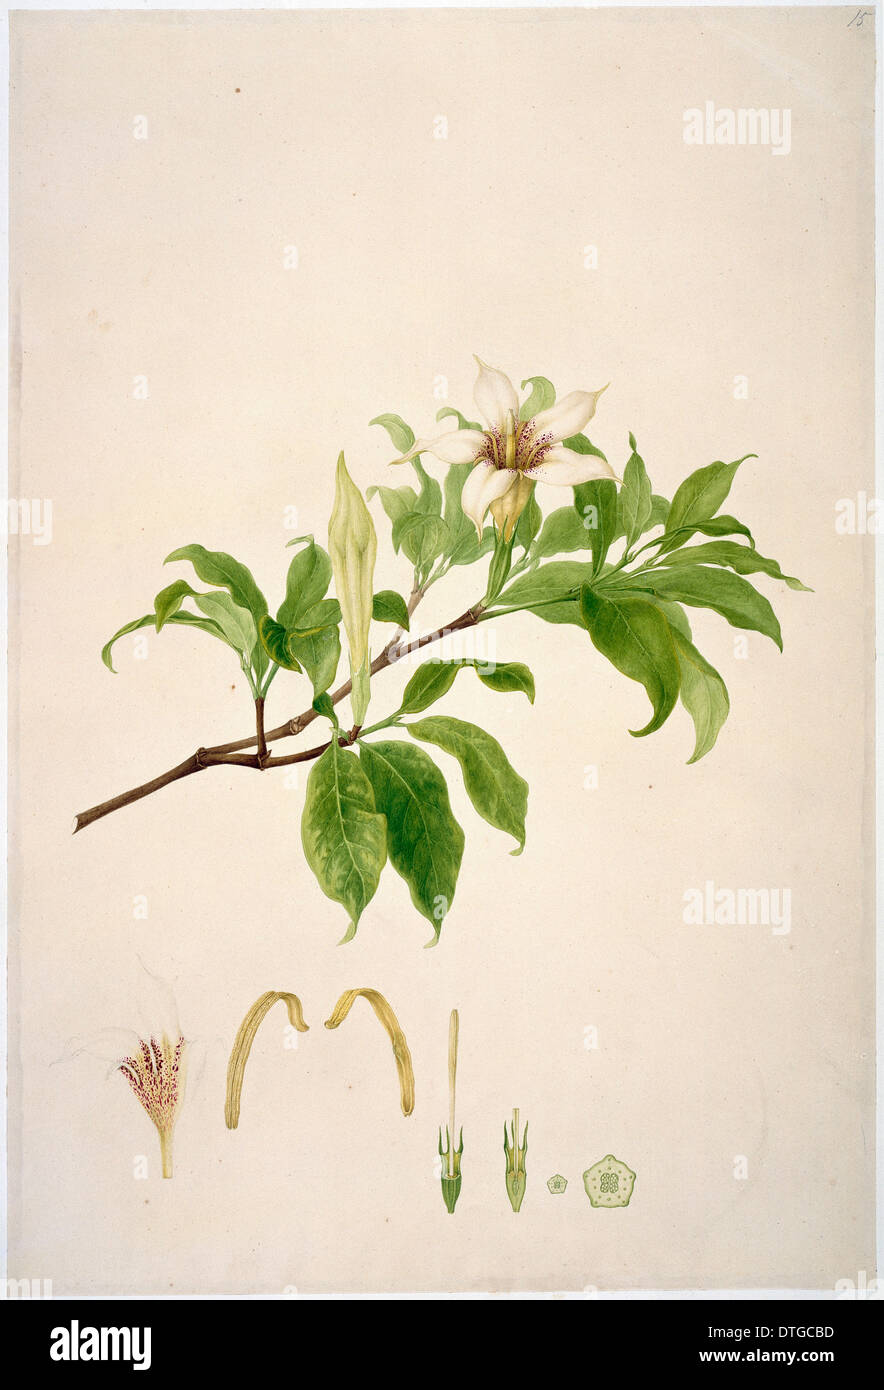 Gardenia rothmannia, candlewood Stock Photo